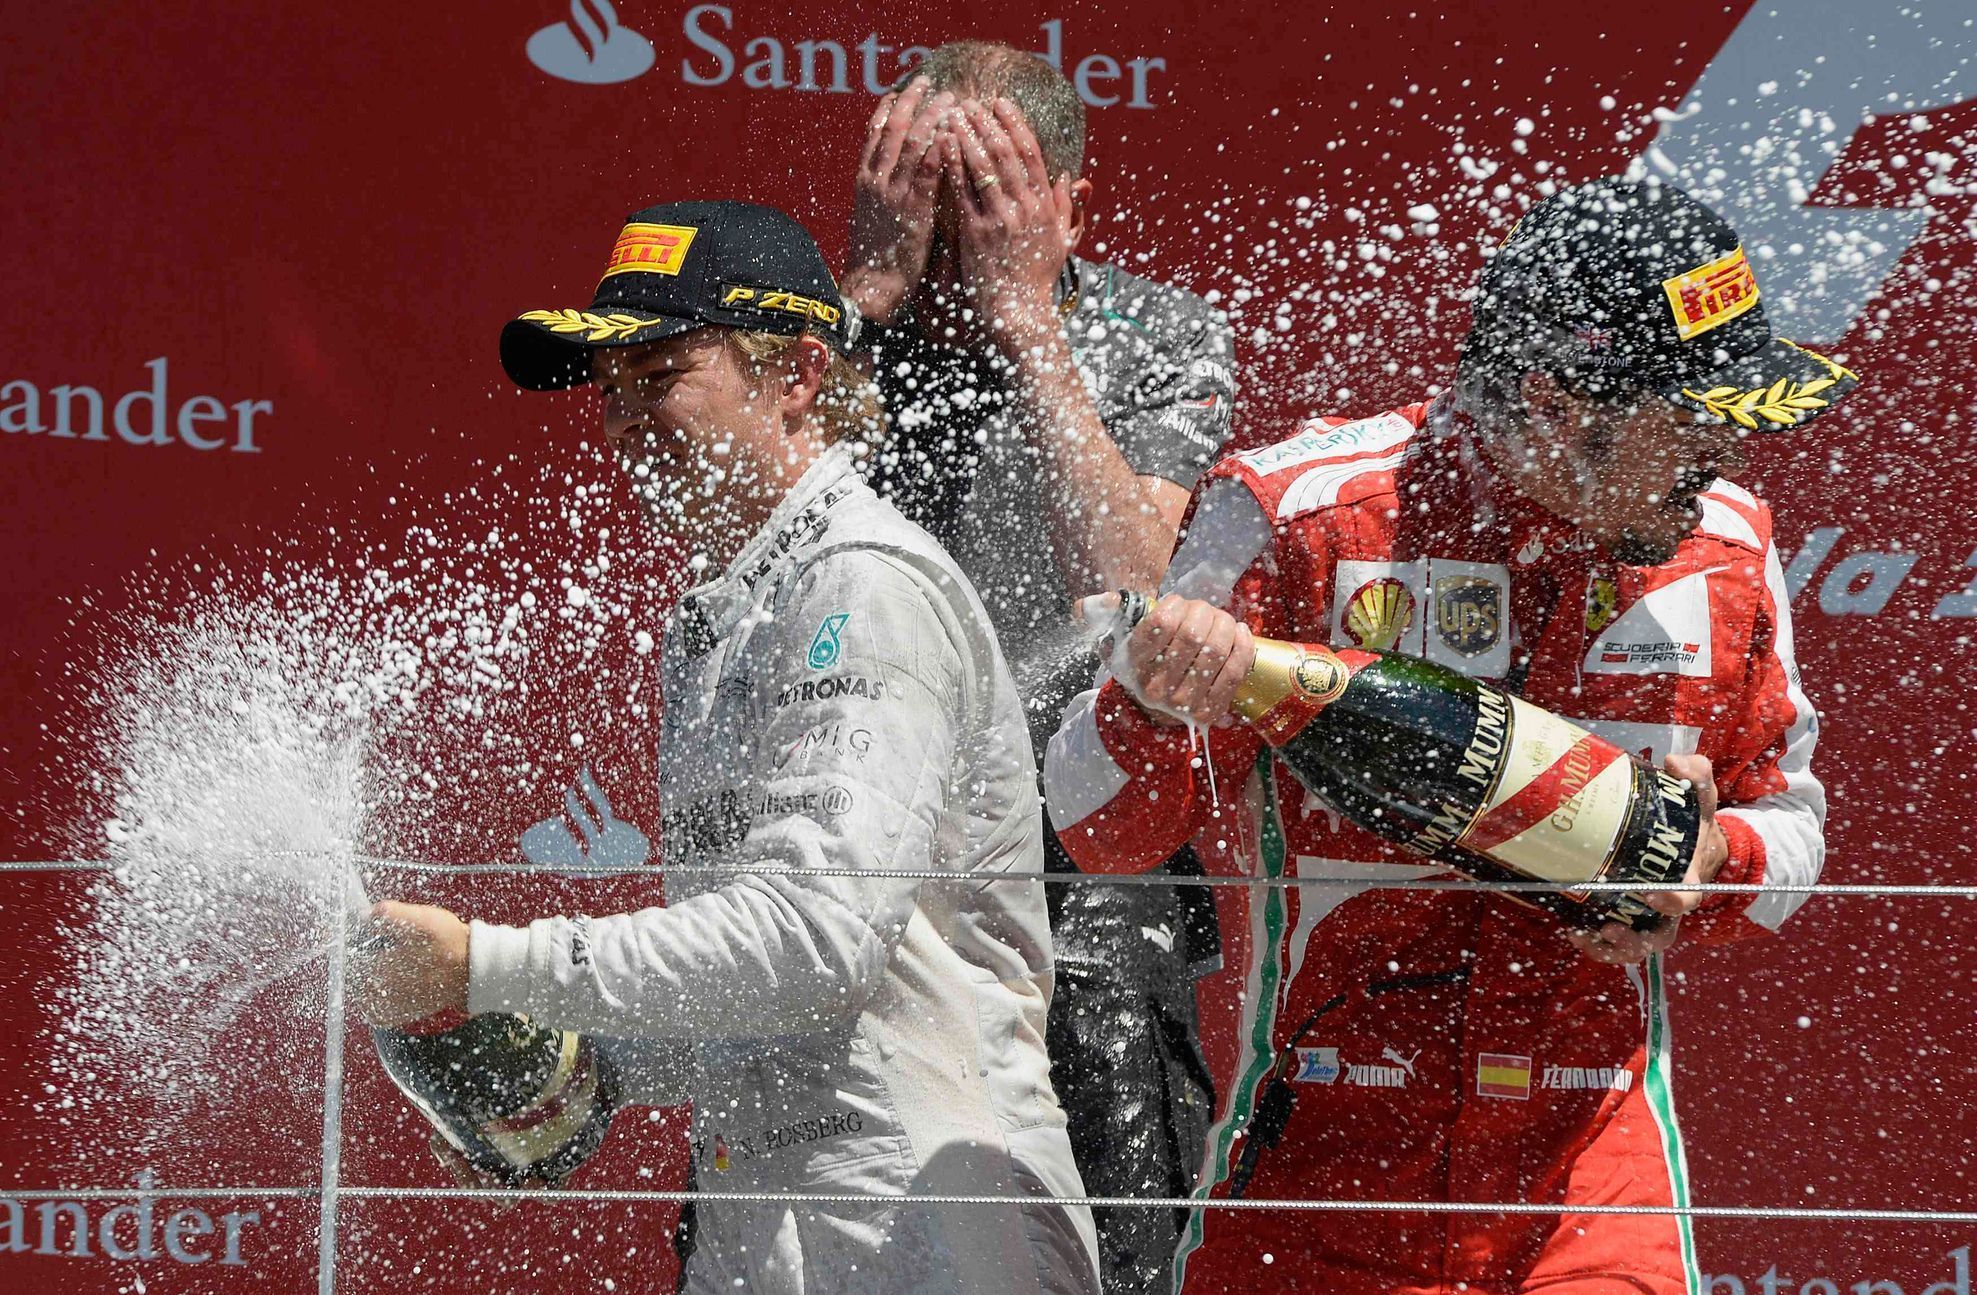 Mercedes Formula One driver Rosberg of Germany celebrates af